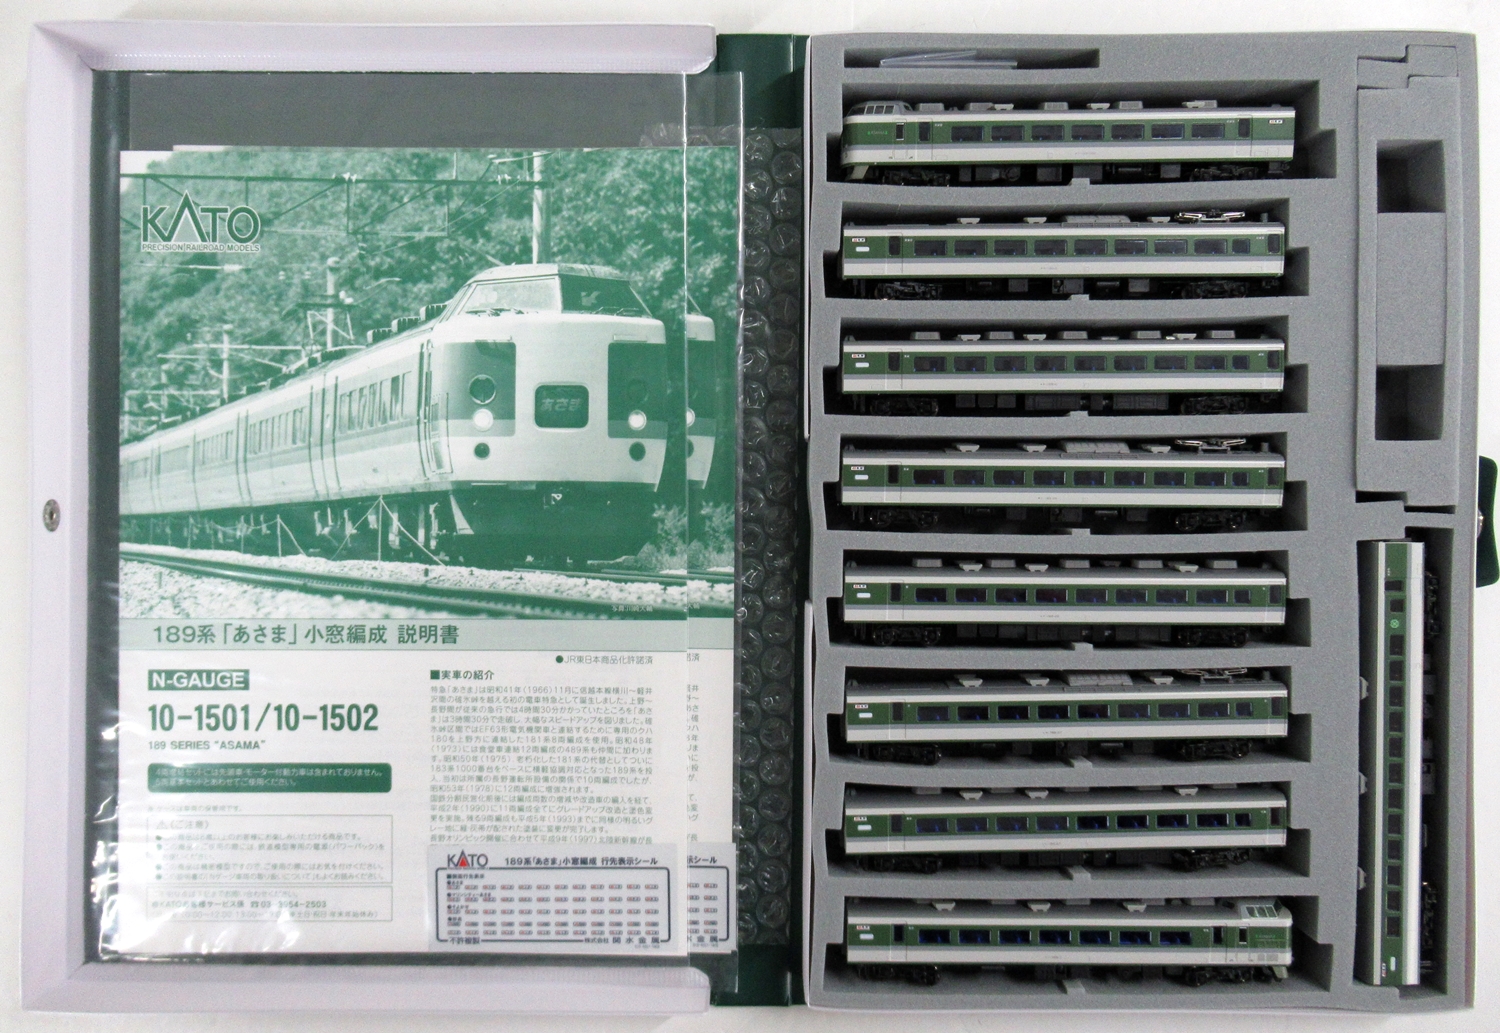 公式]鉄道模型(10-1501+10-1502189系「あさま」小窓編成 基本+増結 9両 ...